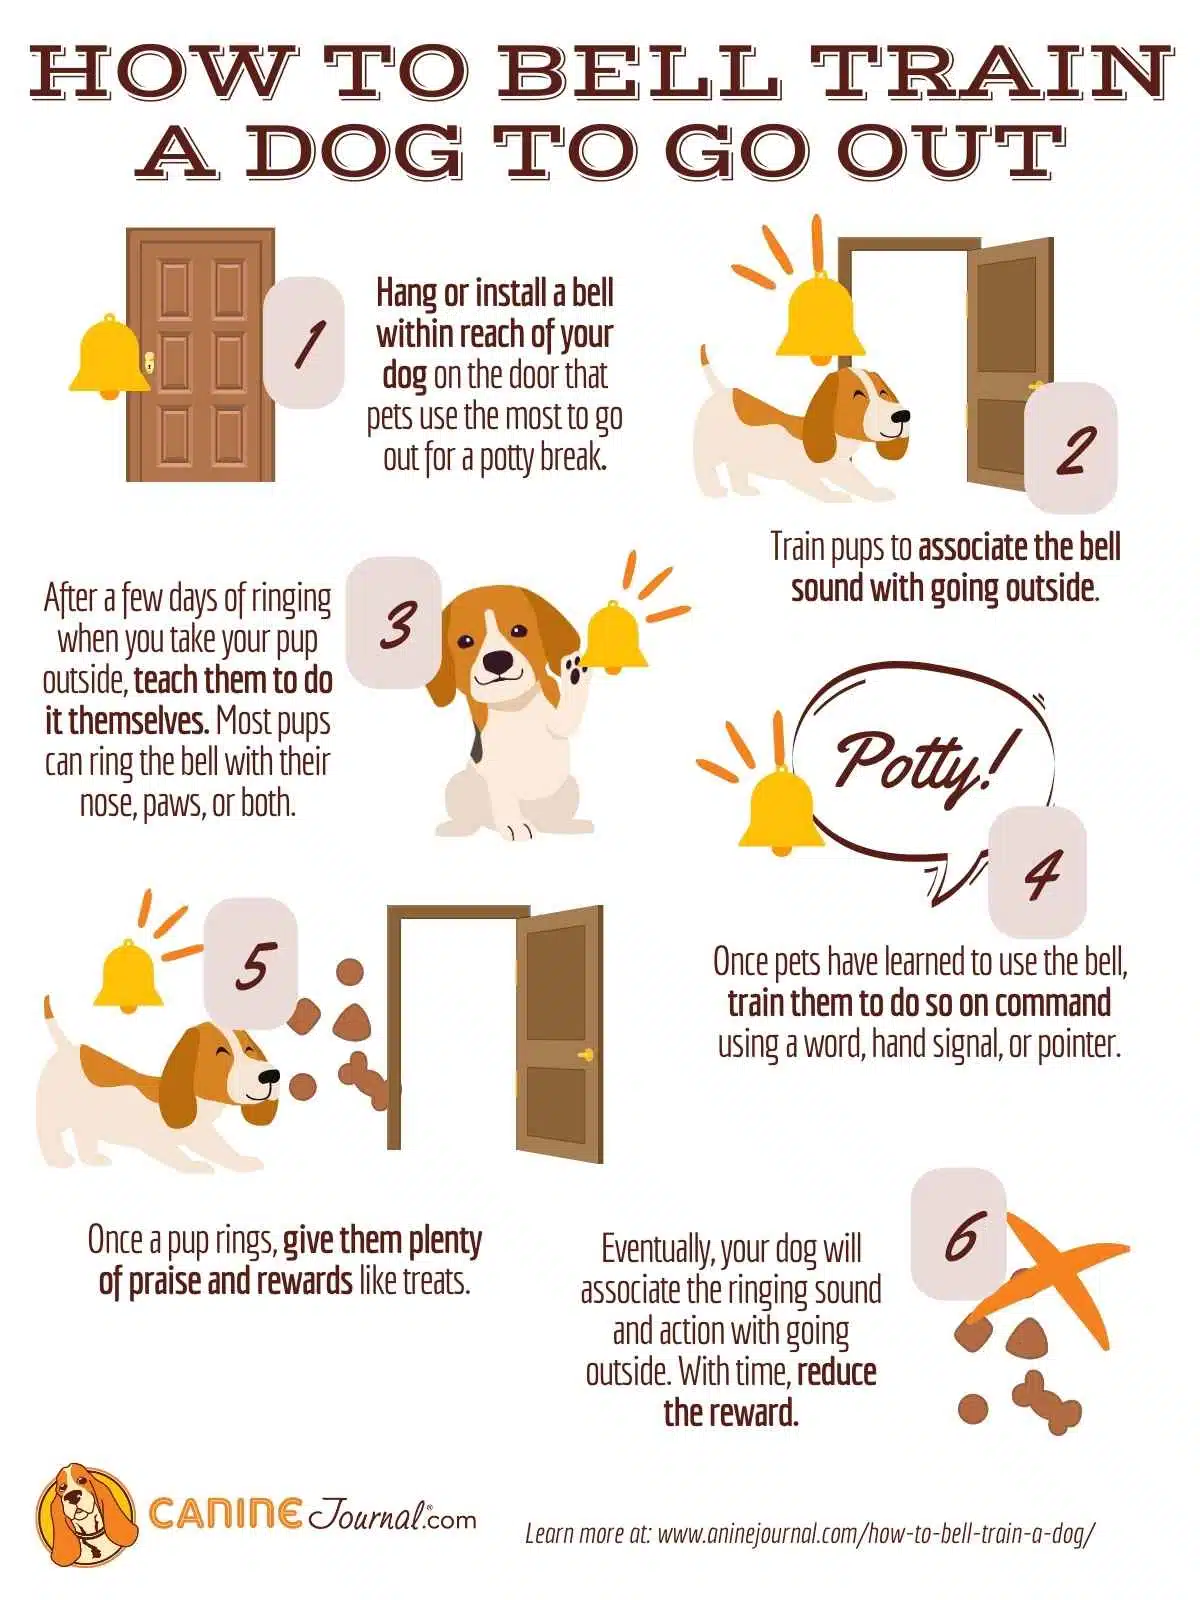 Hoe een hond te trainen om uit te gaan, grafisch met 6 stappen en pictogrammen voor elke stap.